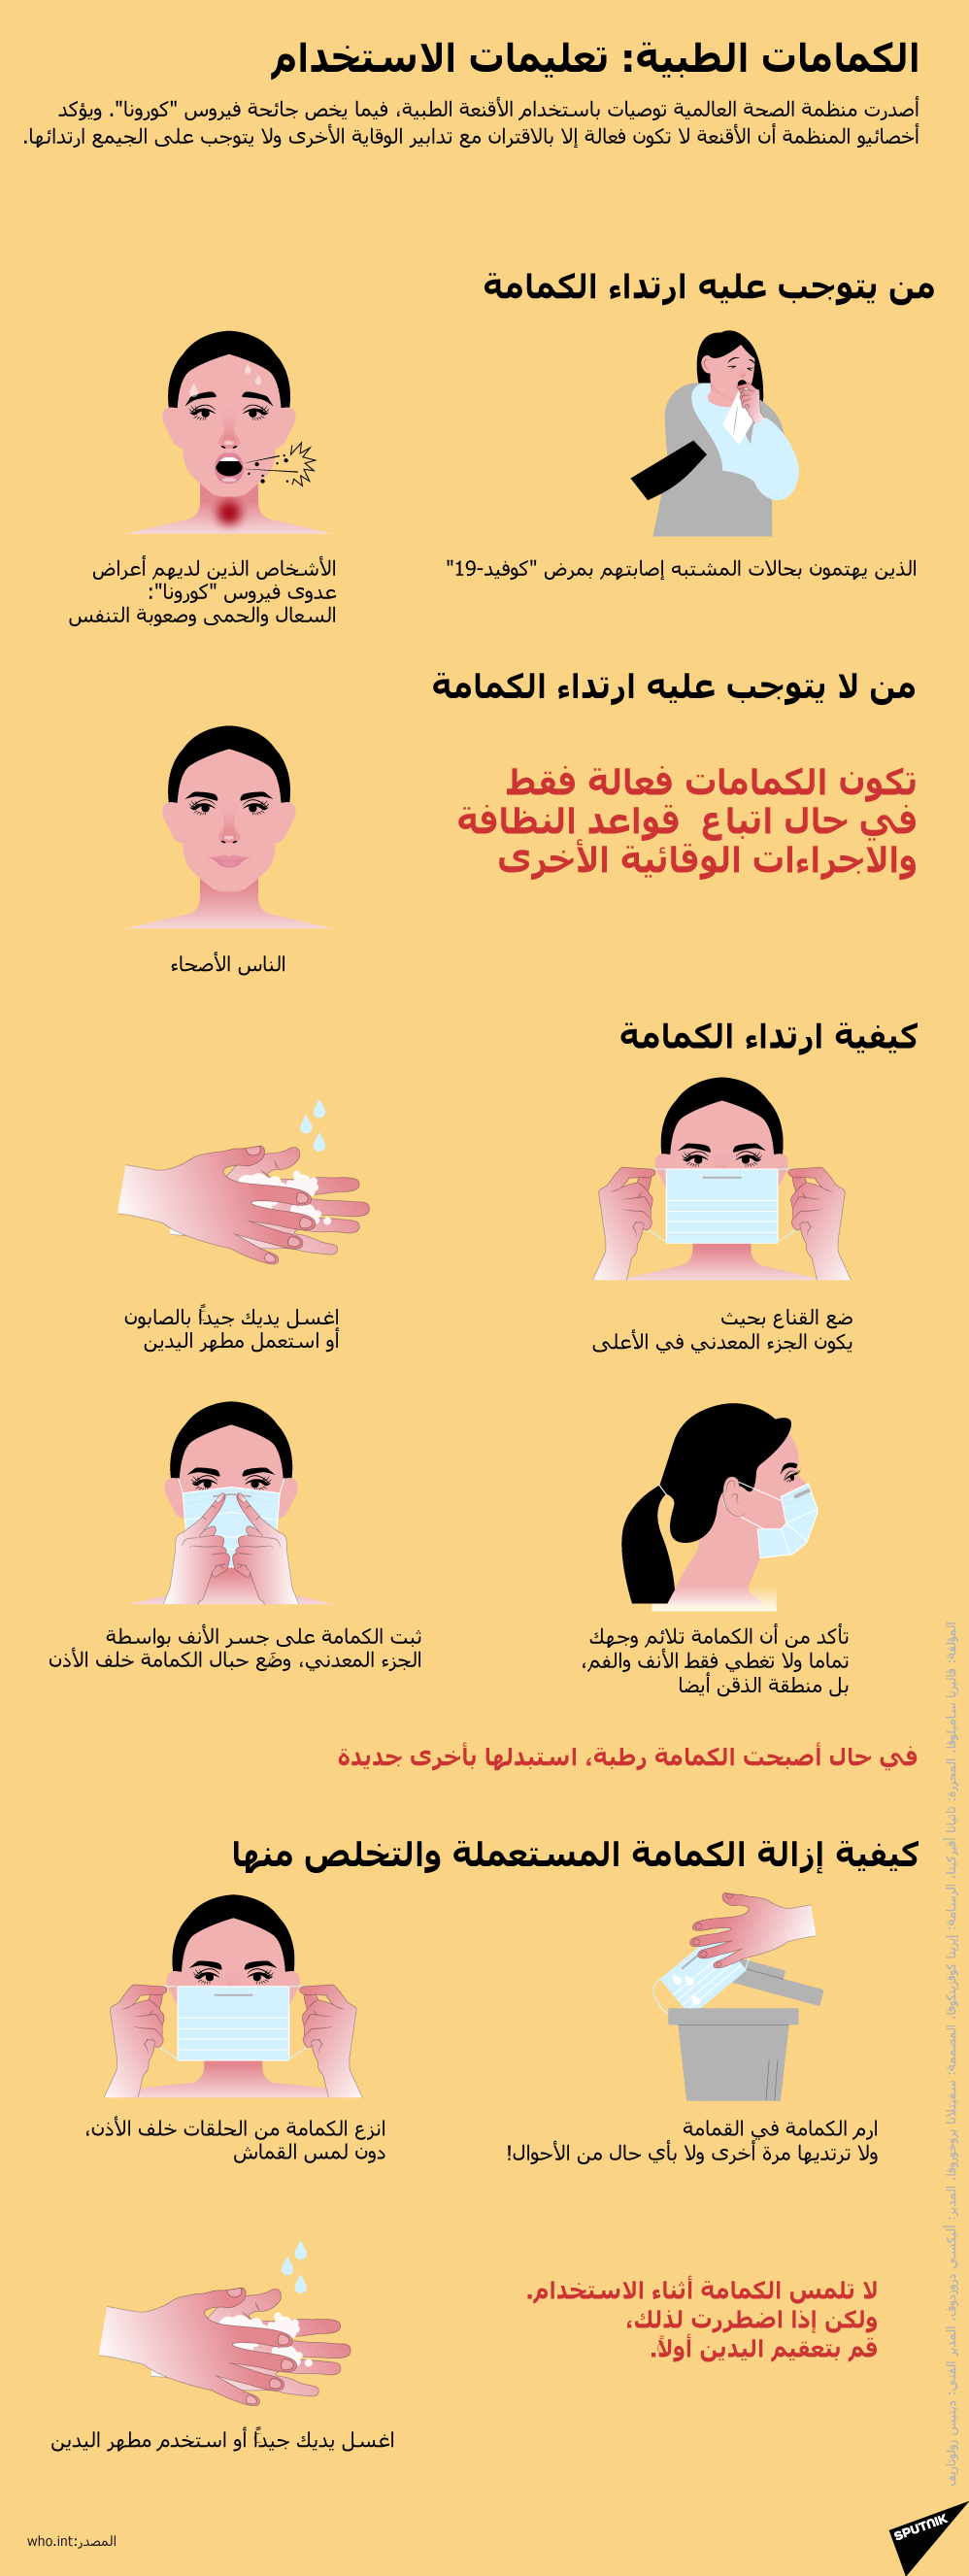 الكمامات الطبية: تعليمات الاستخدام - سبوتنيك عربي